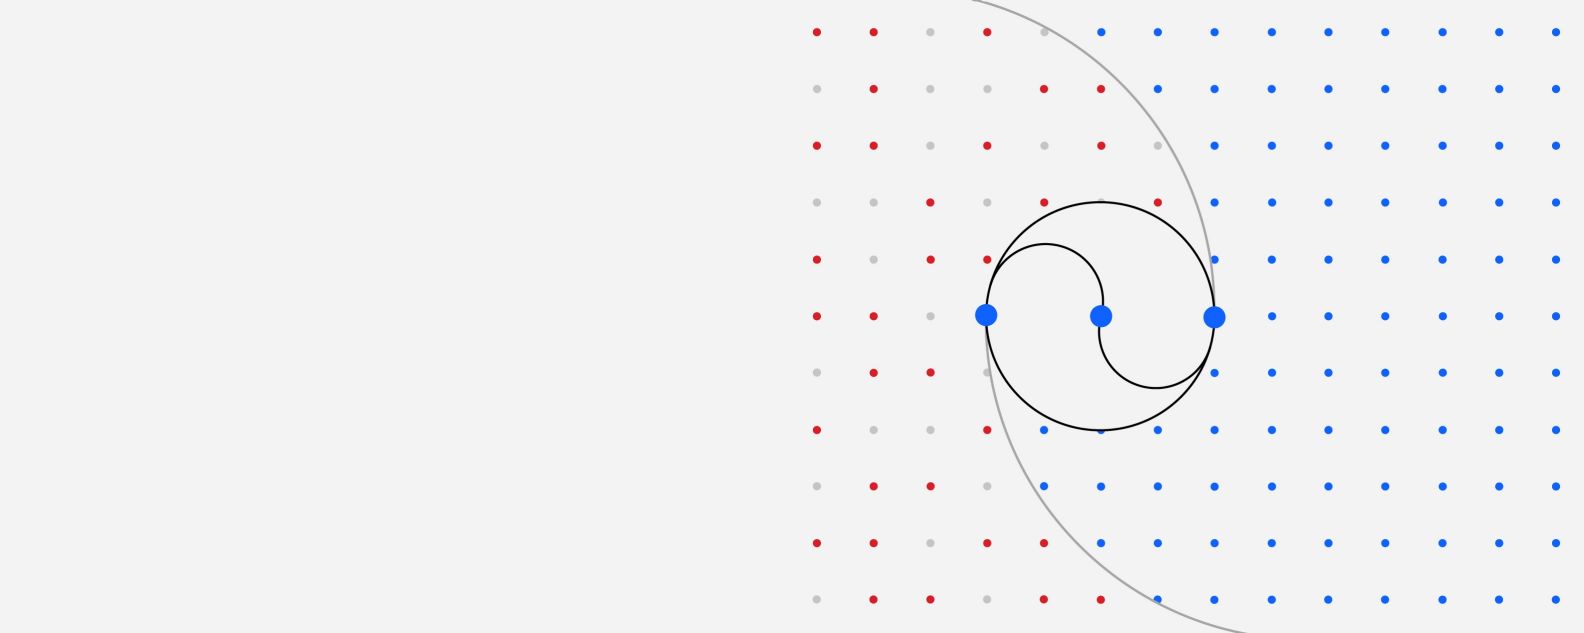 Ilustración de una cuadrícula de puntos de colores donde tres puntos más grandes están conectados por varias líneas curvas